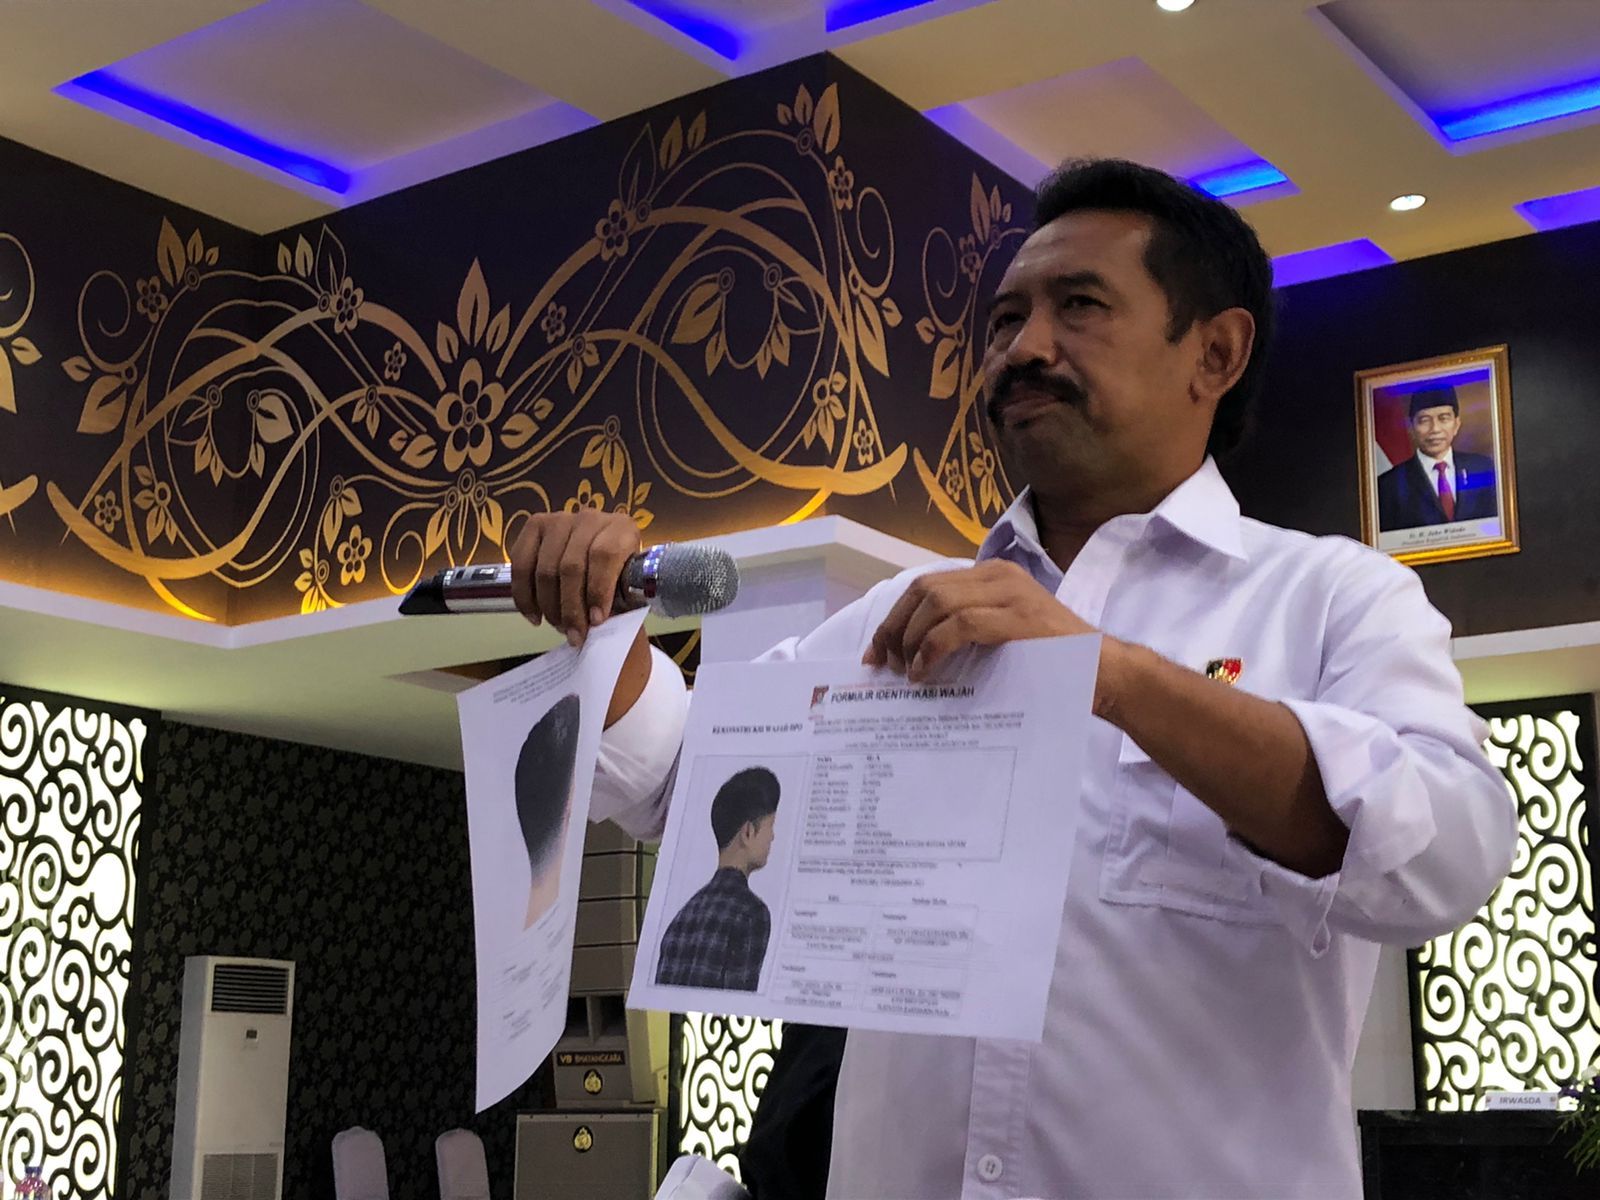 Polda Jabar Rilis Sketsa Pelaku Kasus Pembunuhan di Subang, Daftar 69 Saksi Termasuk Tukang Surabi